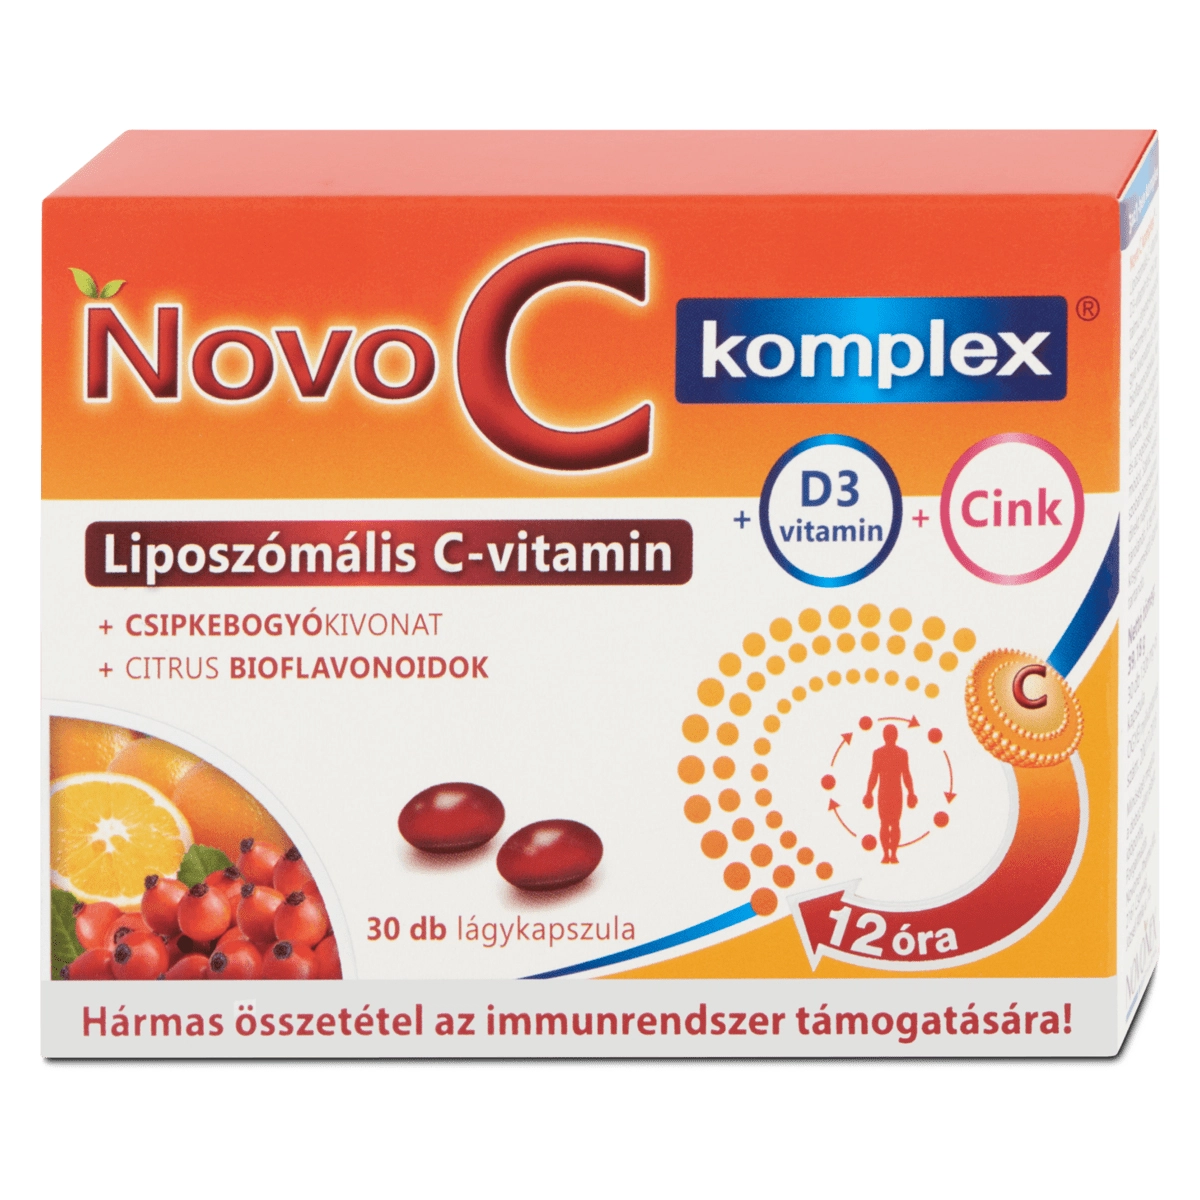 Novo C Komplex liposzómális C-vitamin + D3-vitamin + Cink kapszula ...